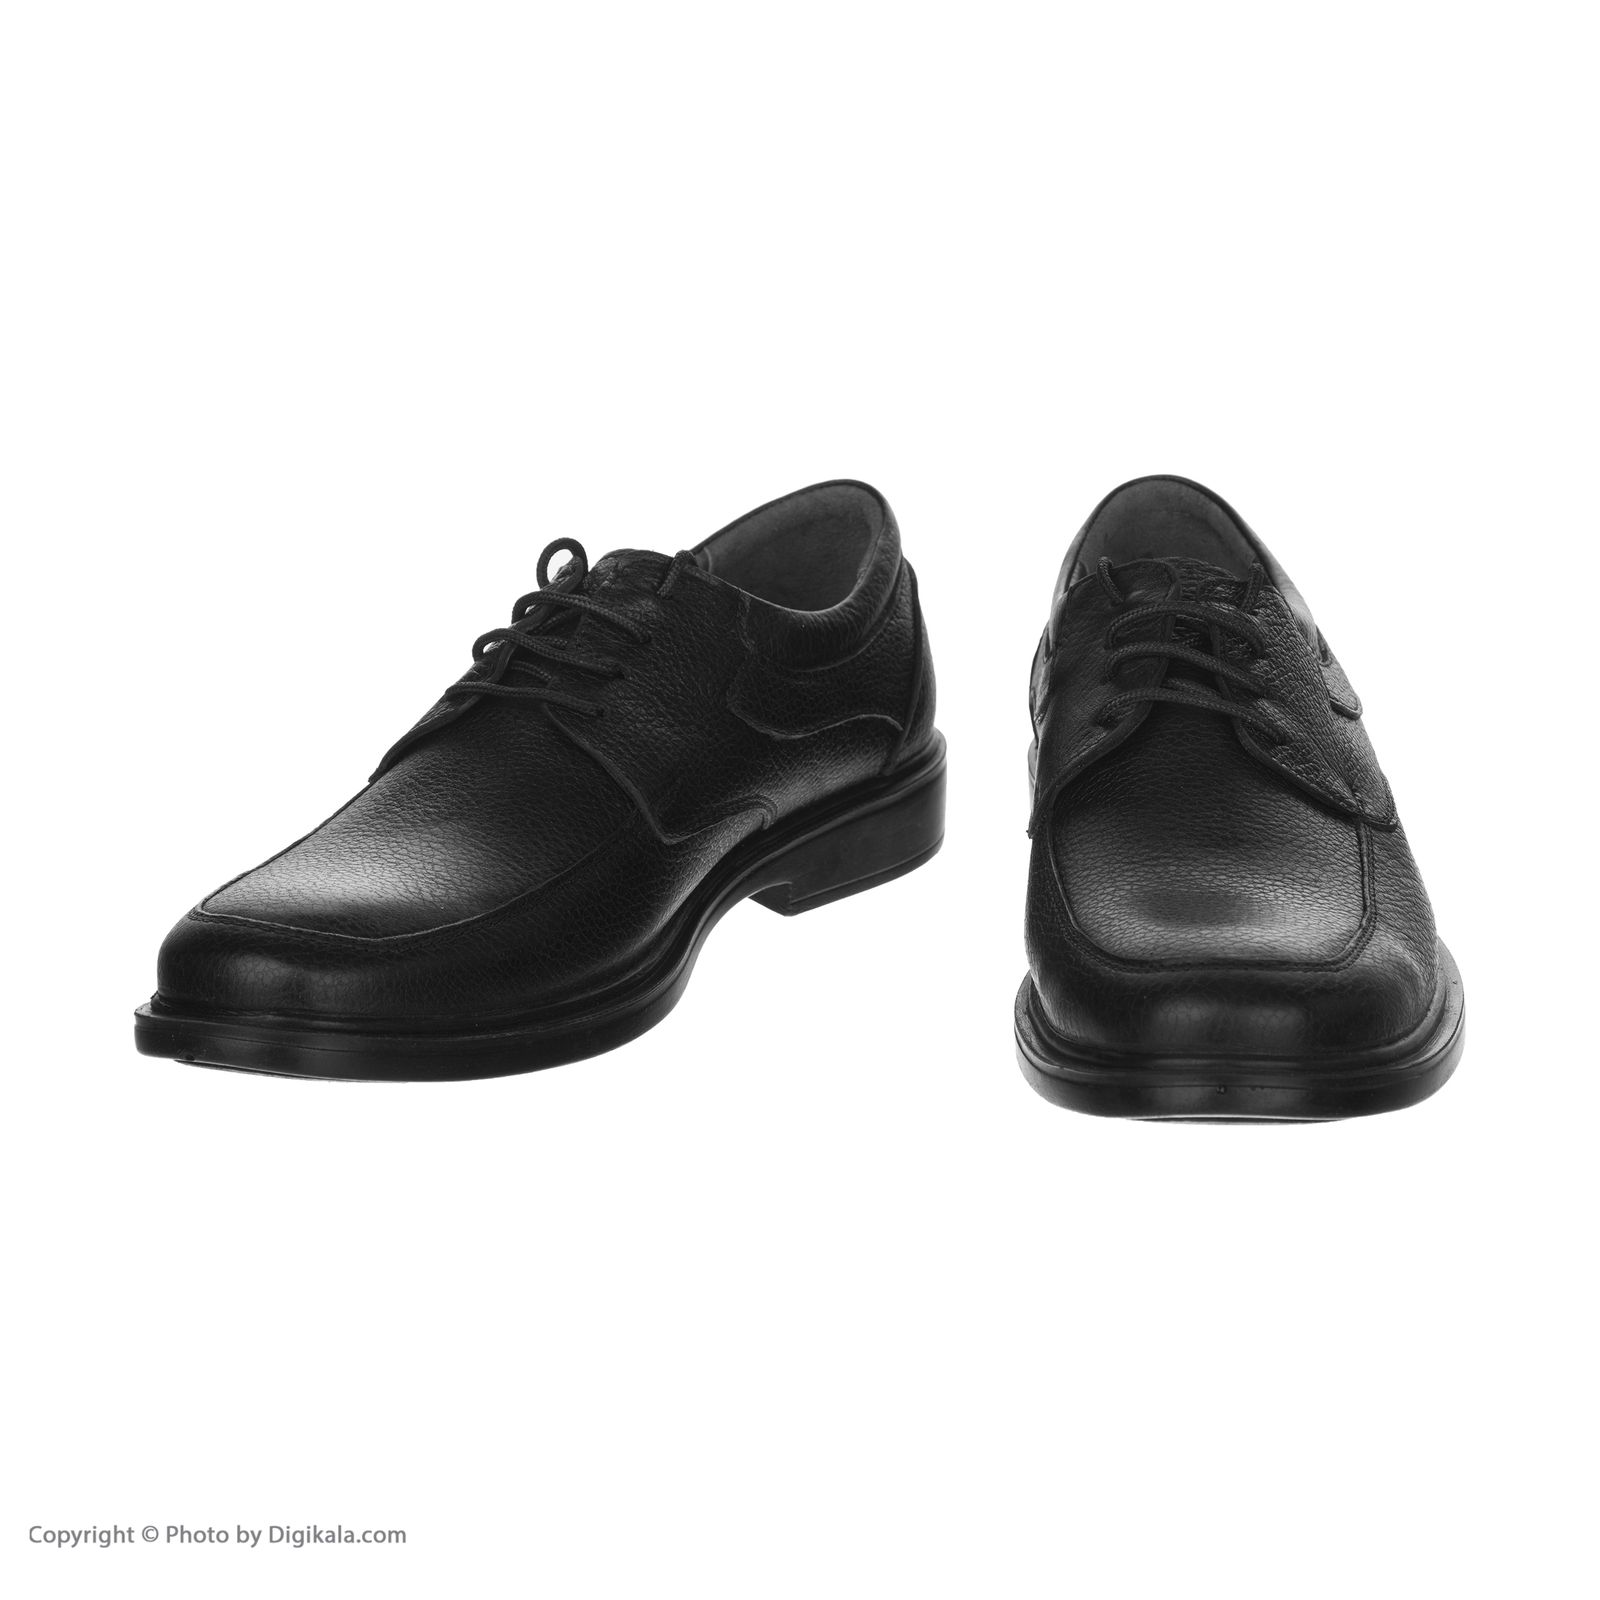  کفش مردانه شیفر مدل 7258B503101 -  - 5